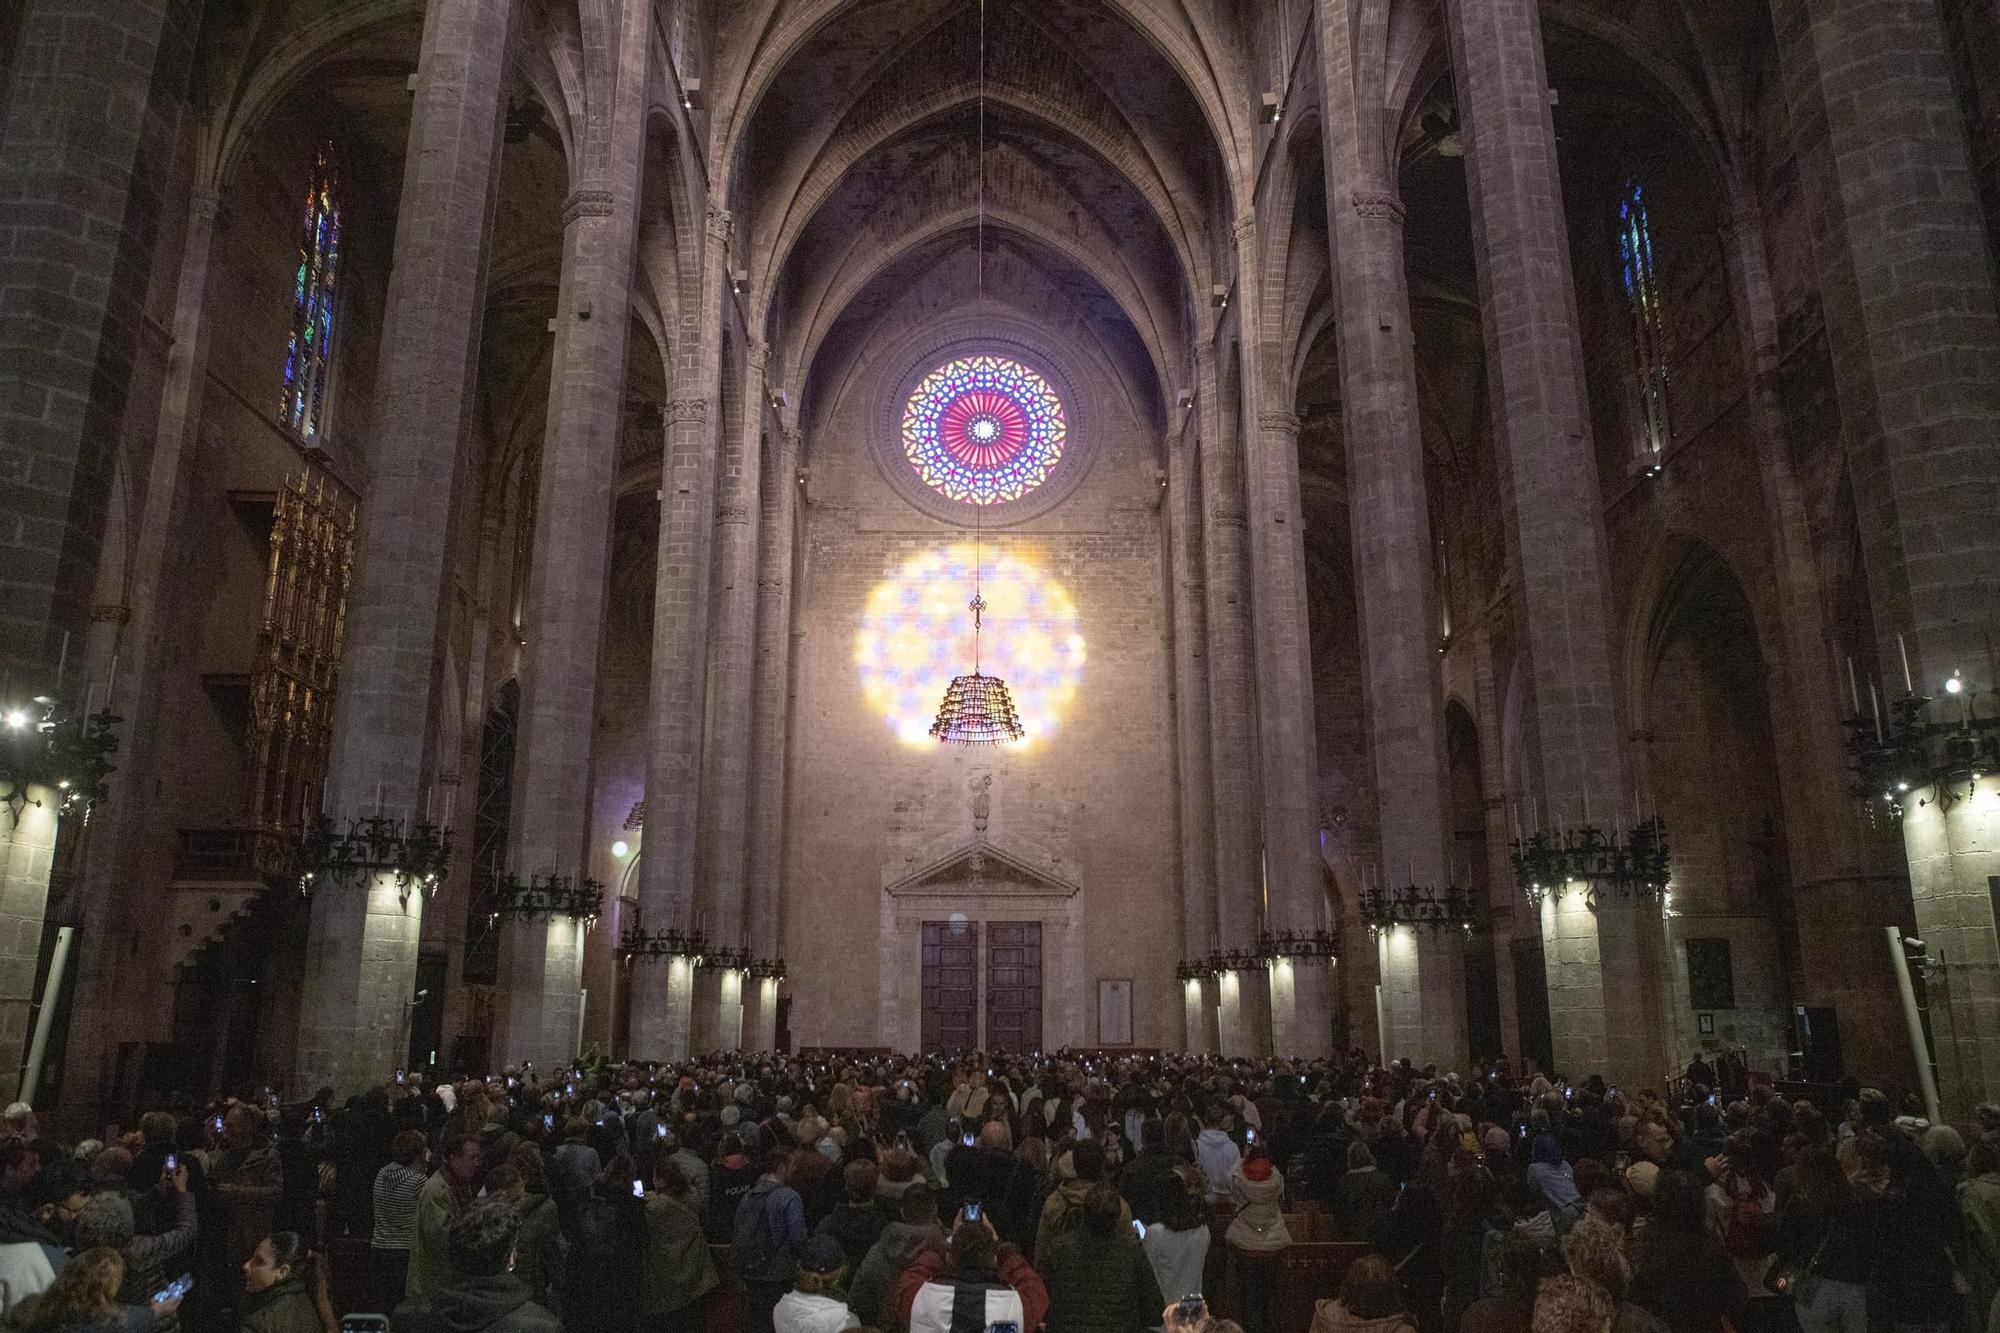 Fest des Lichtes auf Mallorca: So war die magische Acht am Freitag in der Kathedrale von Palma zu sehen